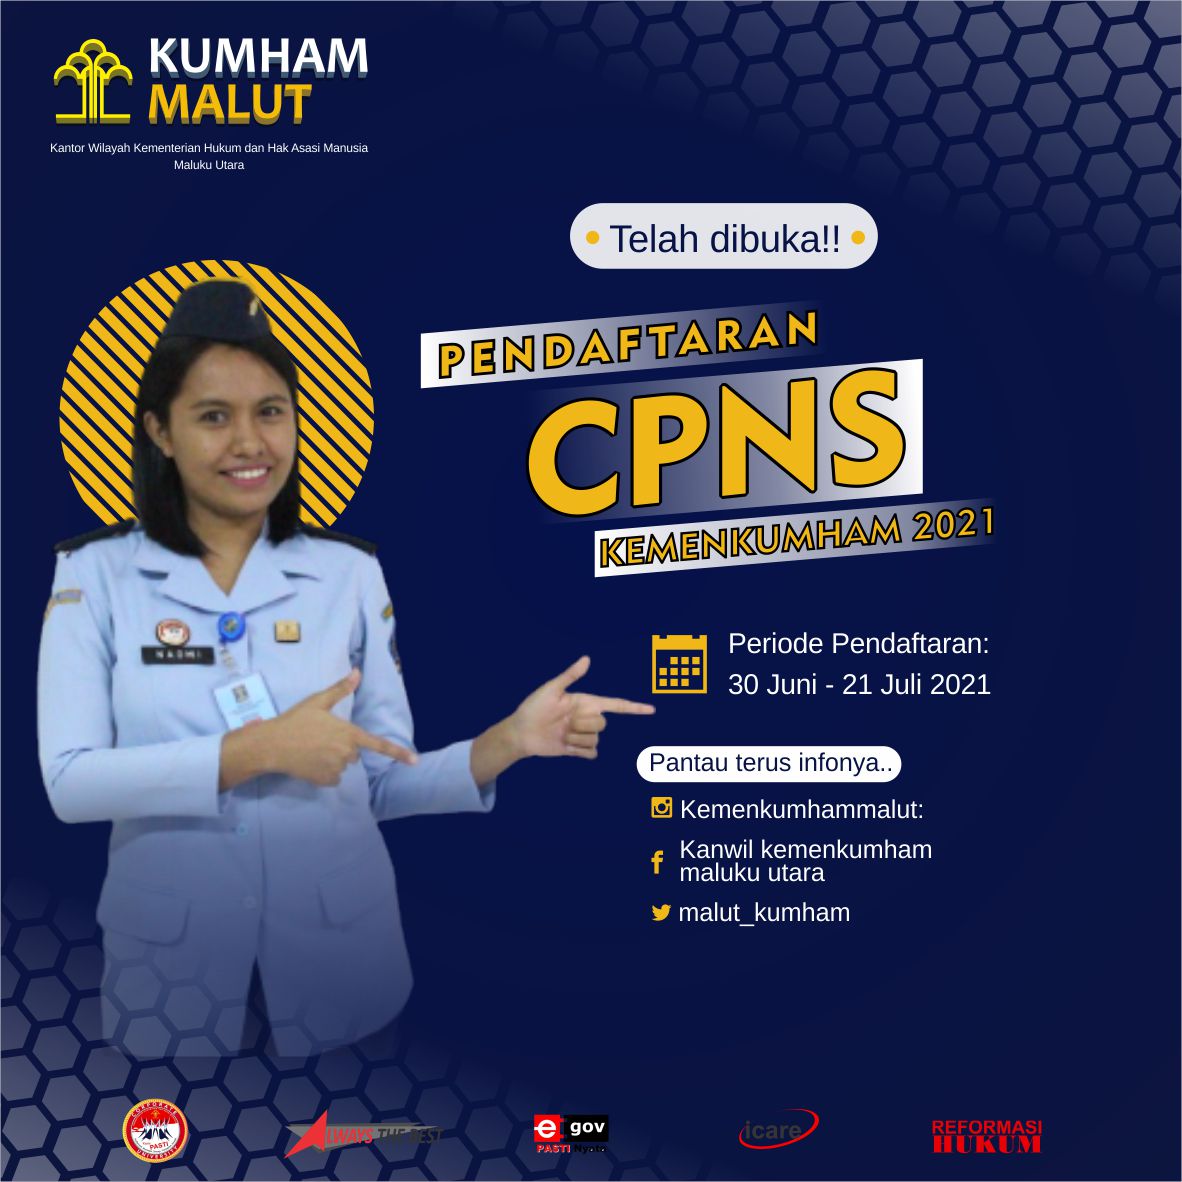 CPNS_KUMHAM_2021_SLIDE_1